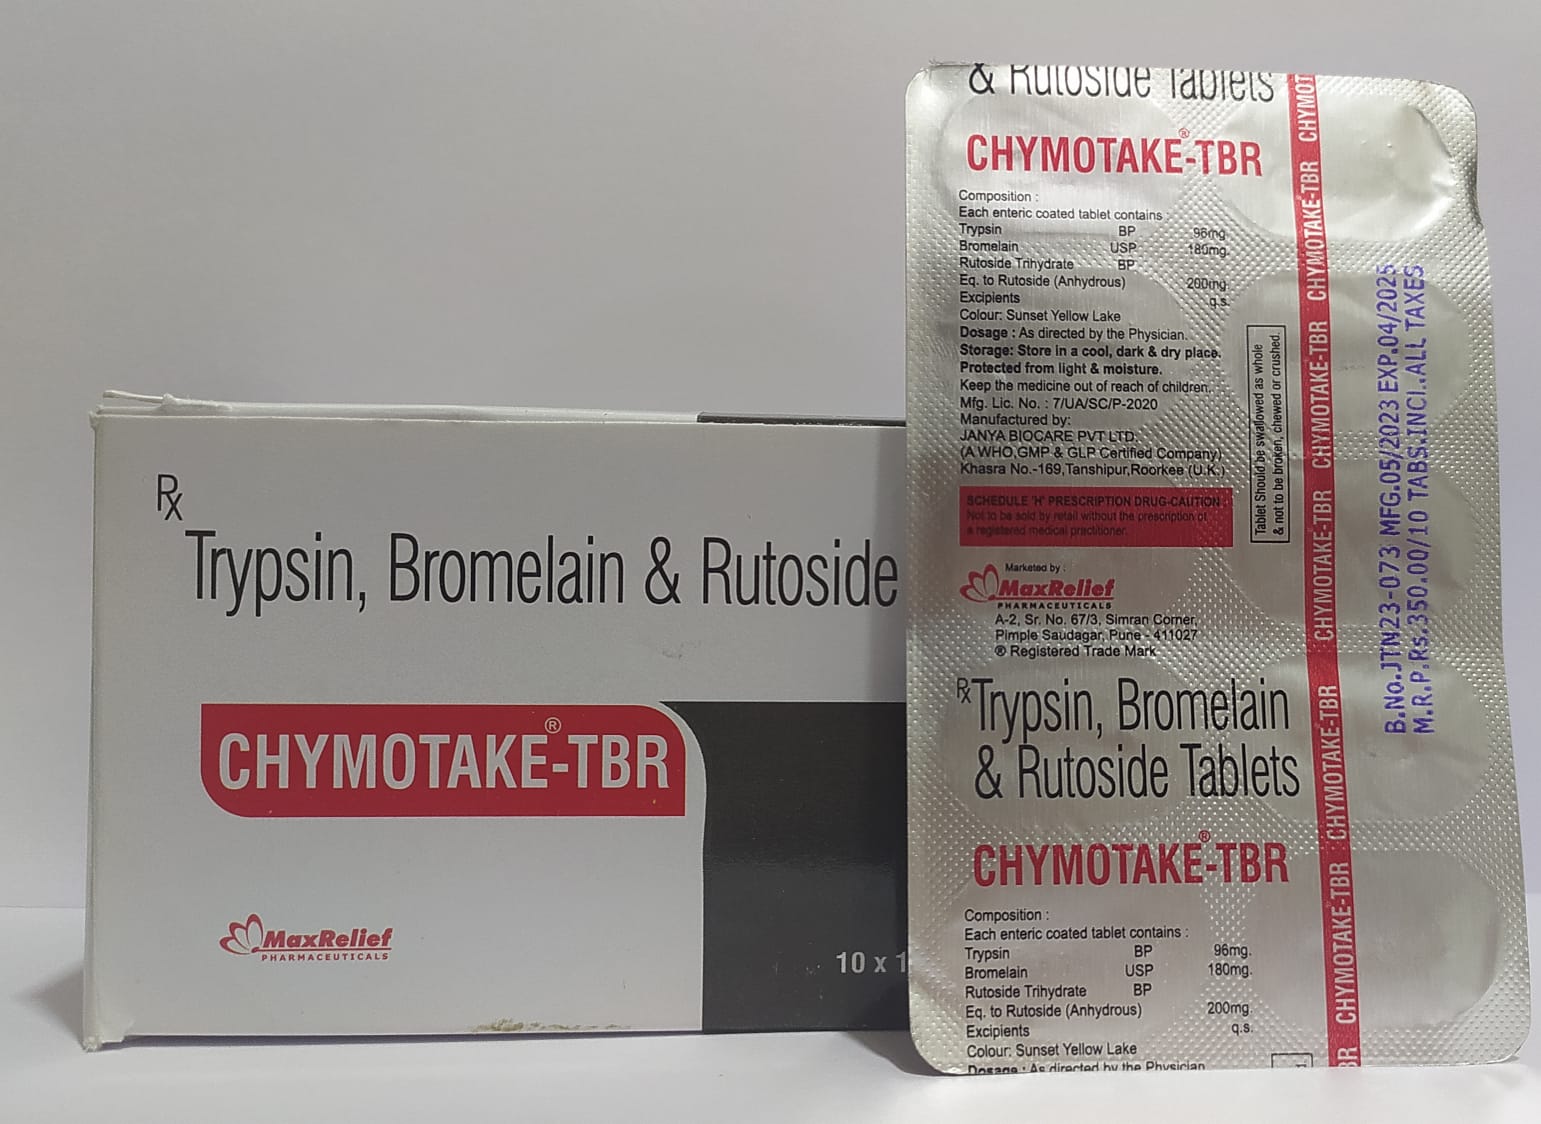 Chymotake - TBR